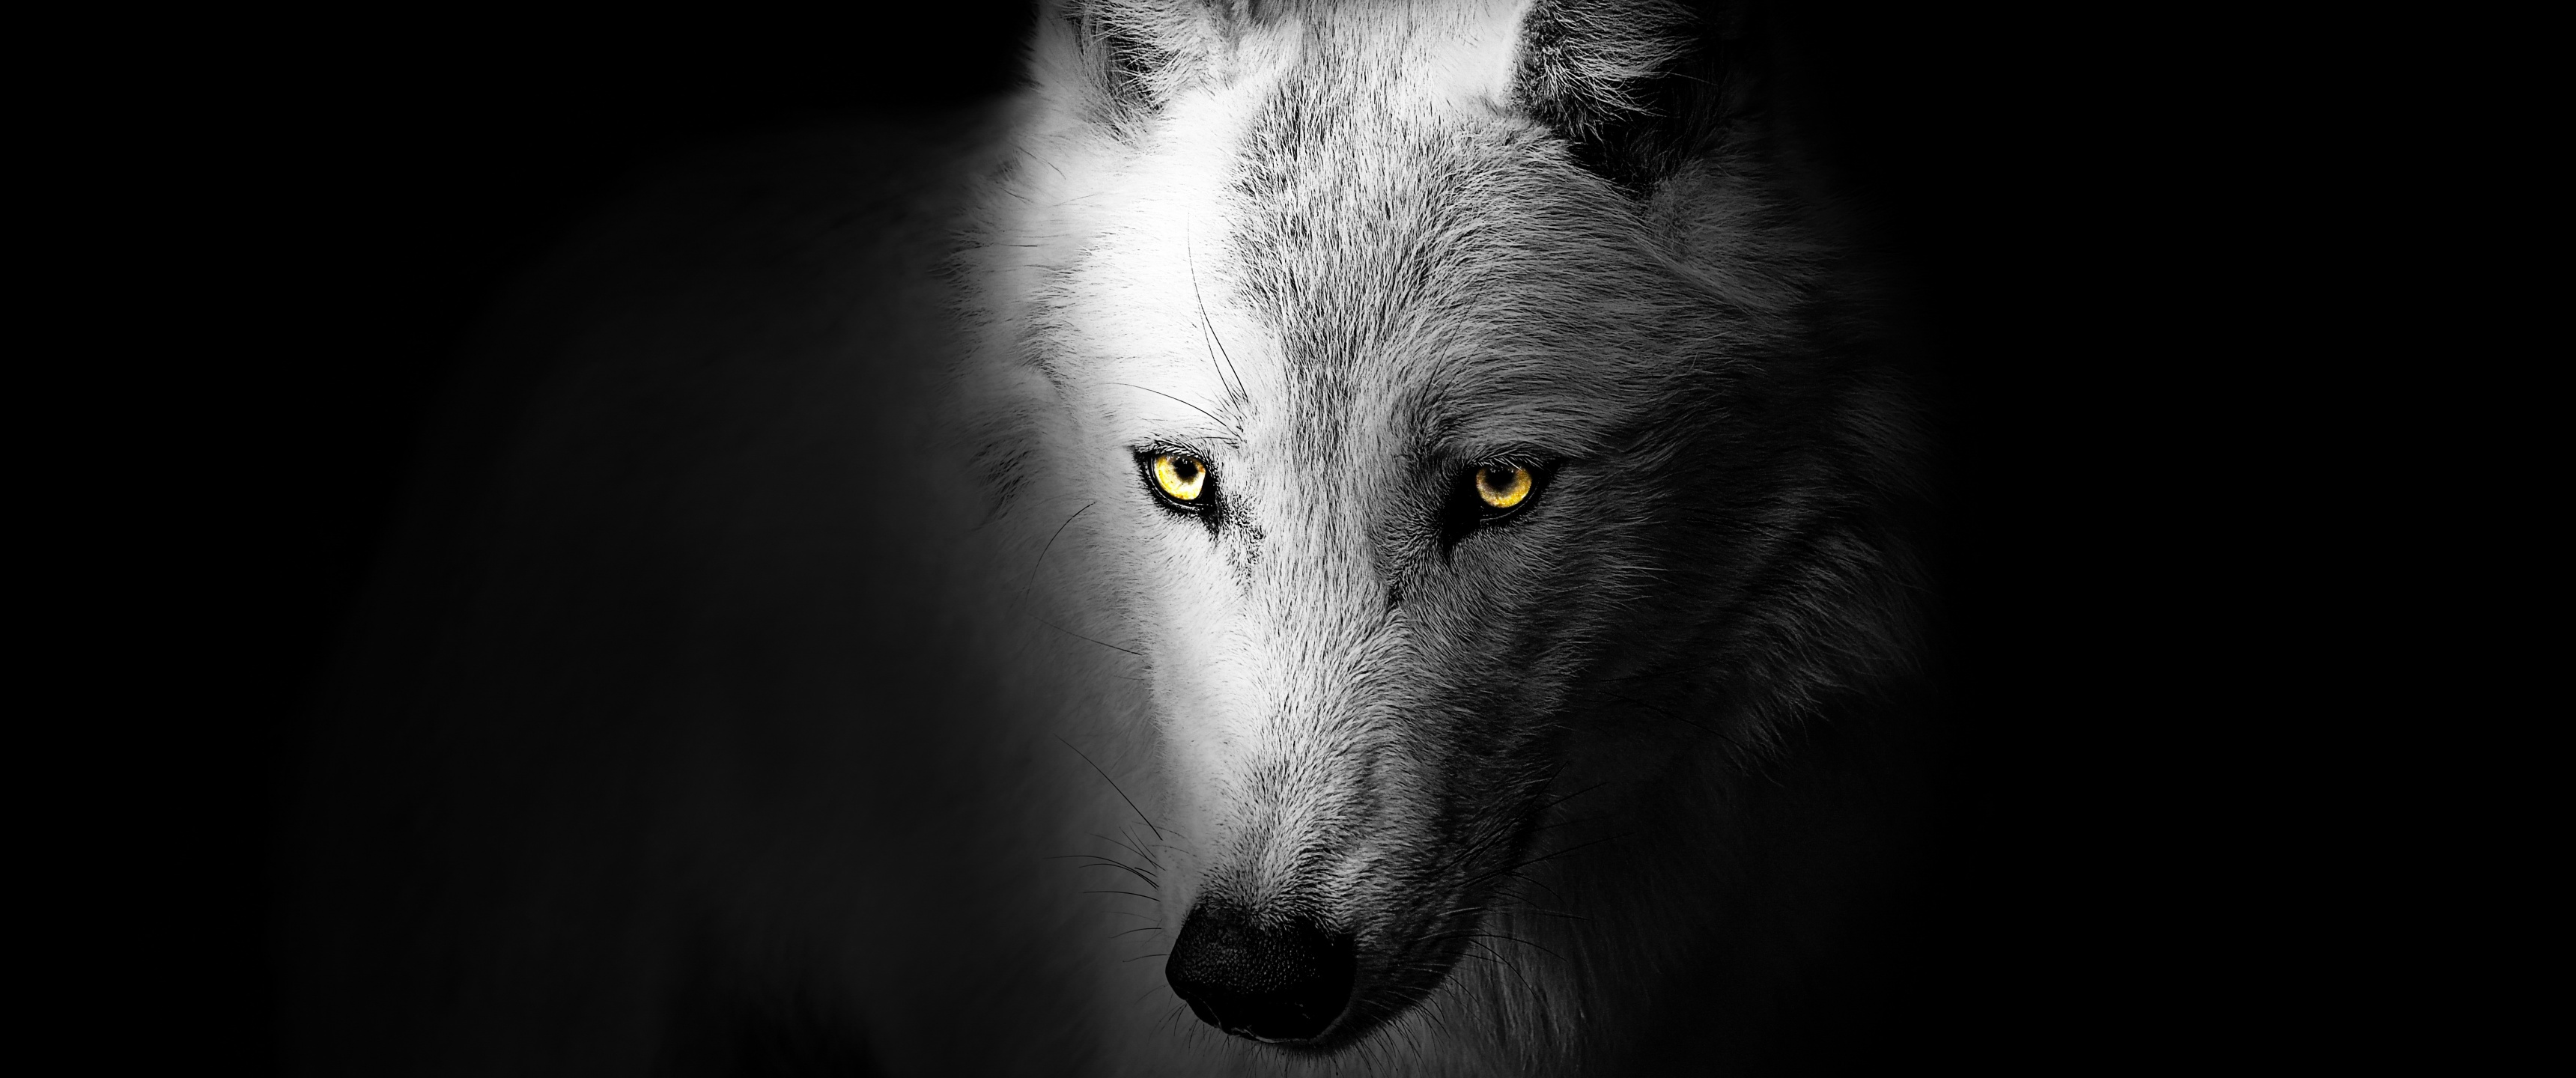 Фото волка в темноте